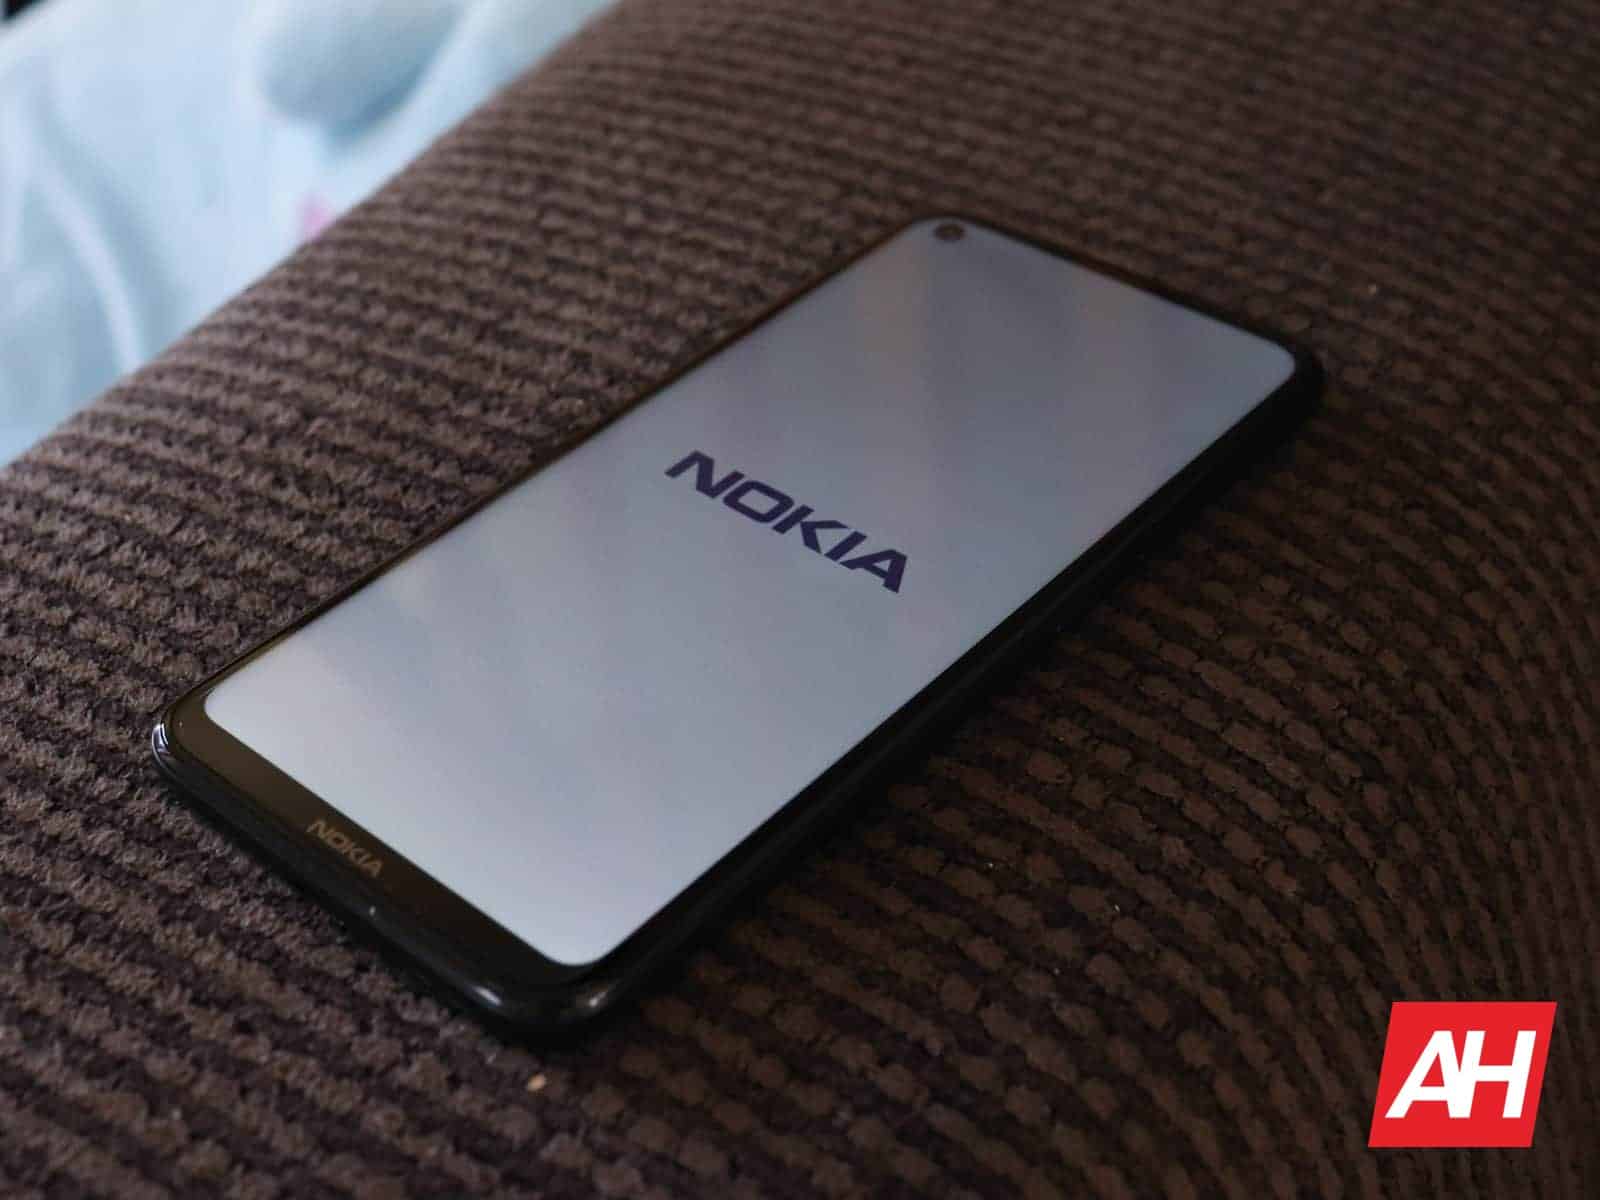 Aparecieron 17 dispositivos Nokia, causando confusión